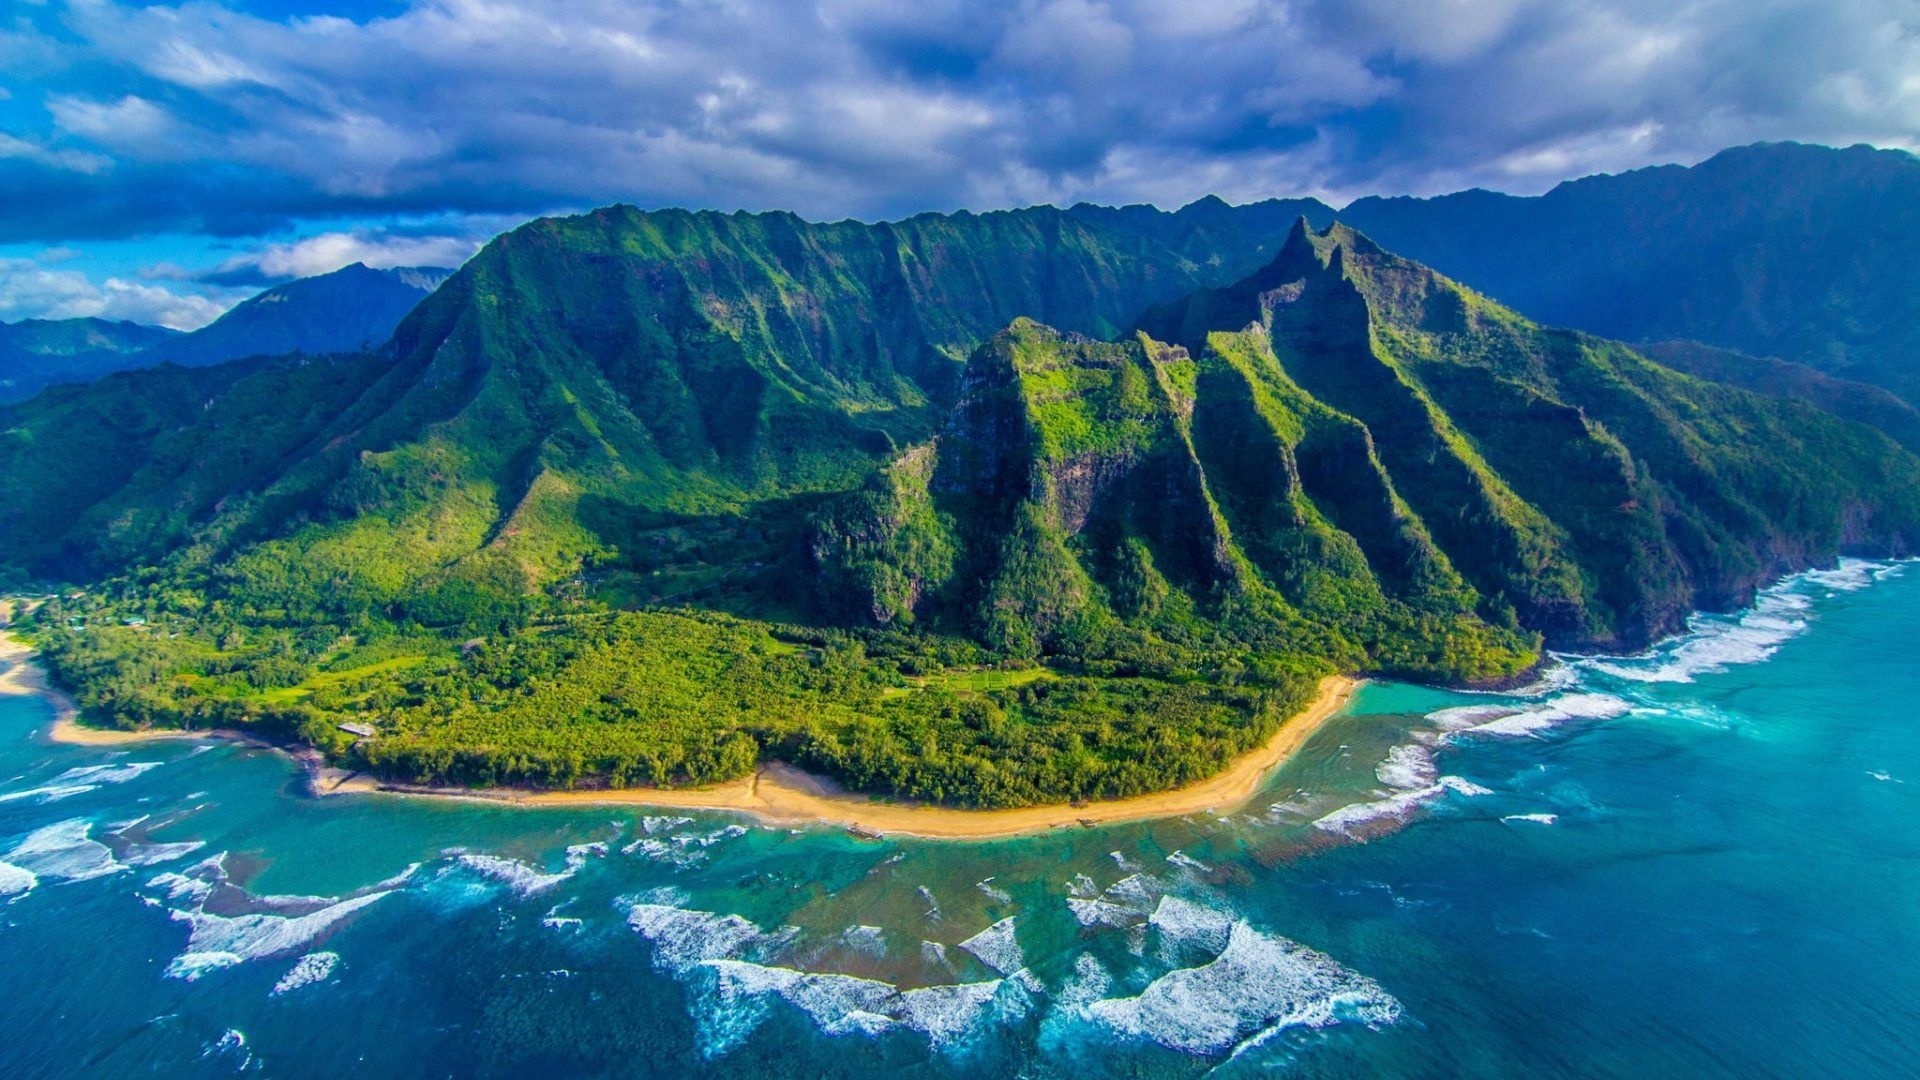 Kauai Mountain Picture